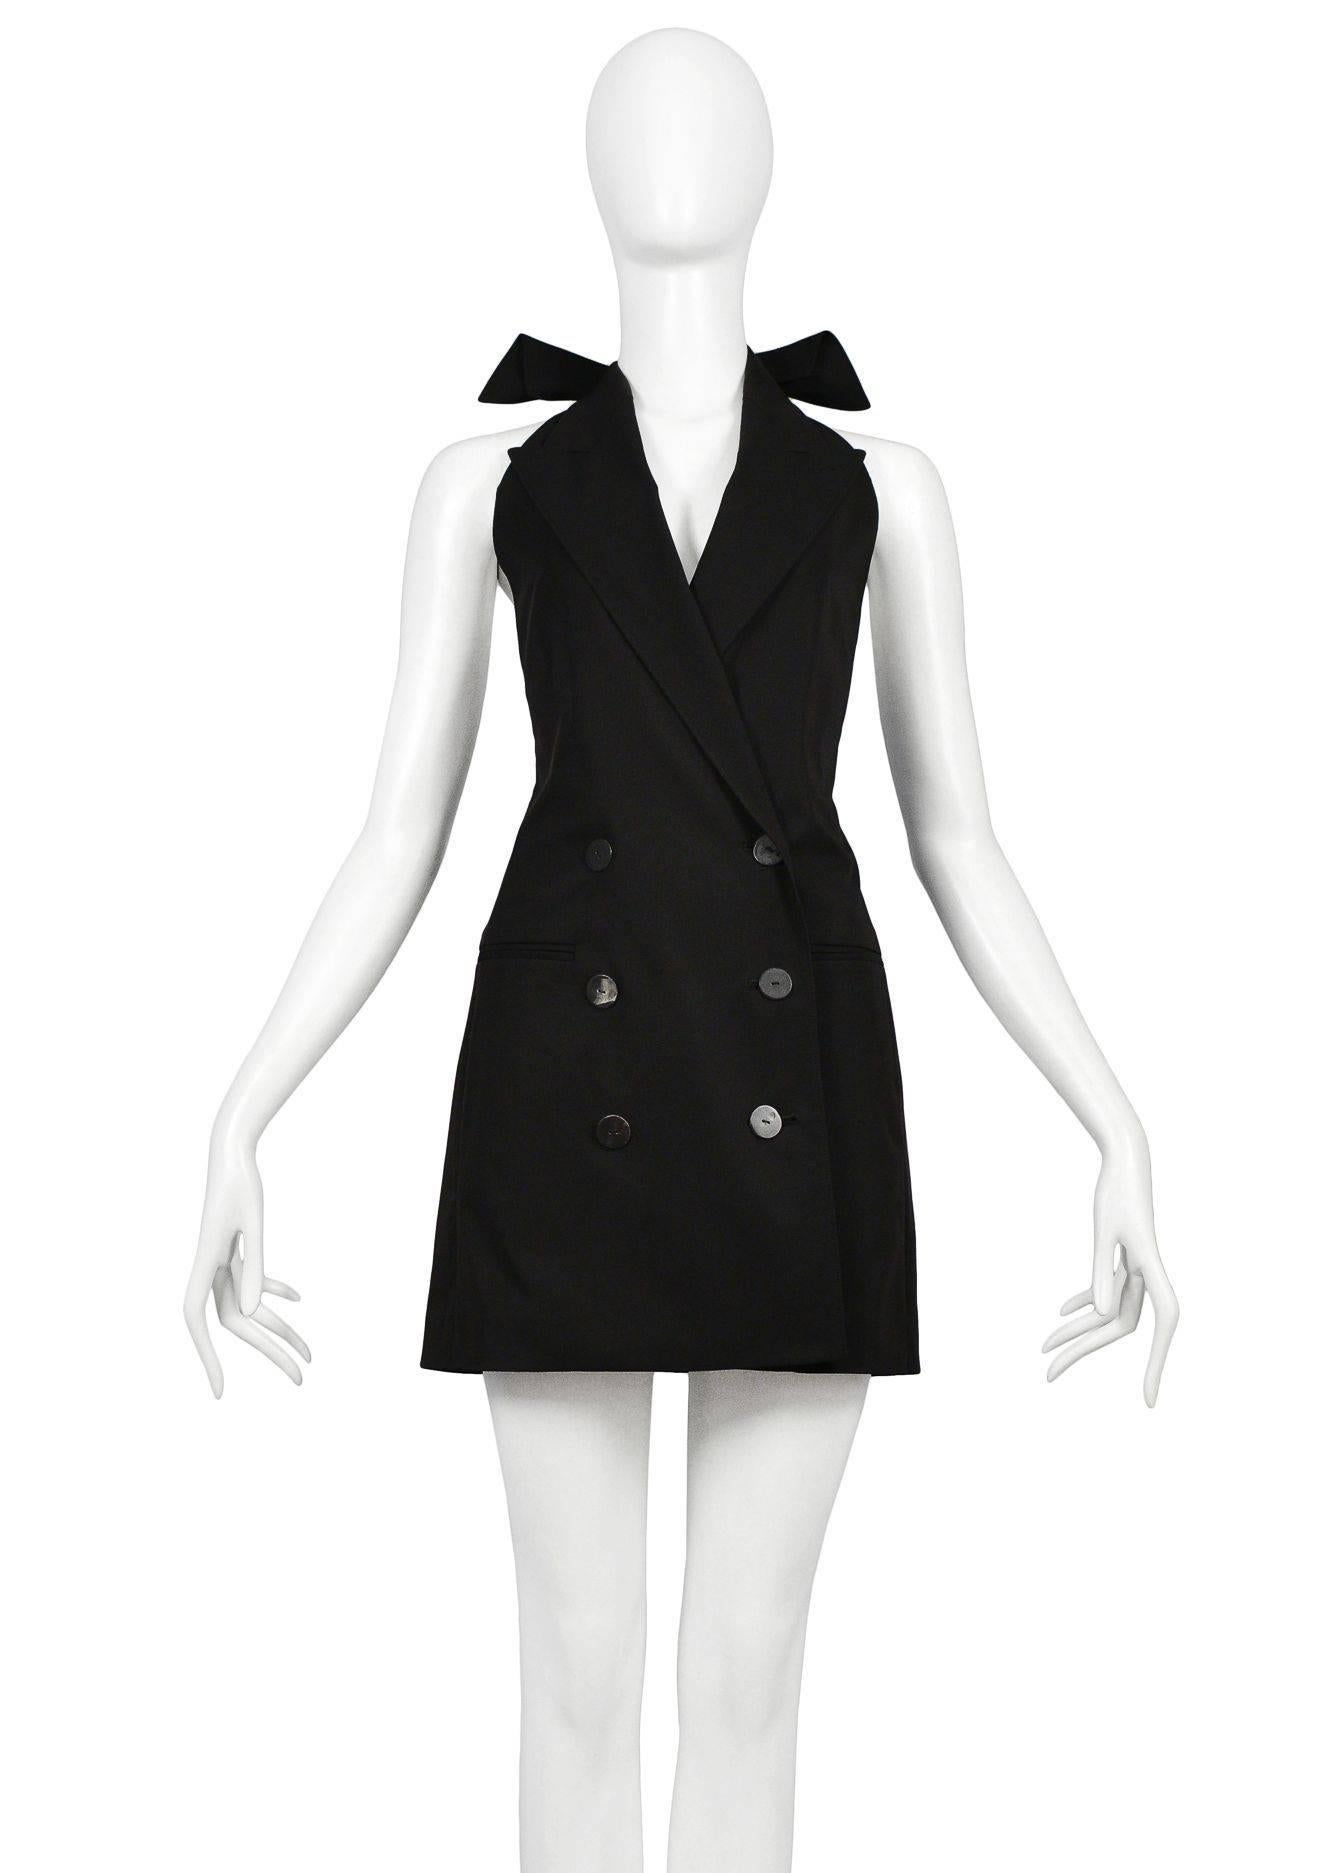 Jean Paul Gaultier black tuxedo mini dress with open back.